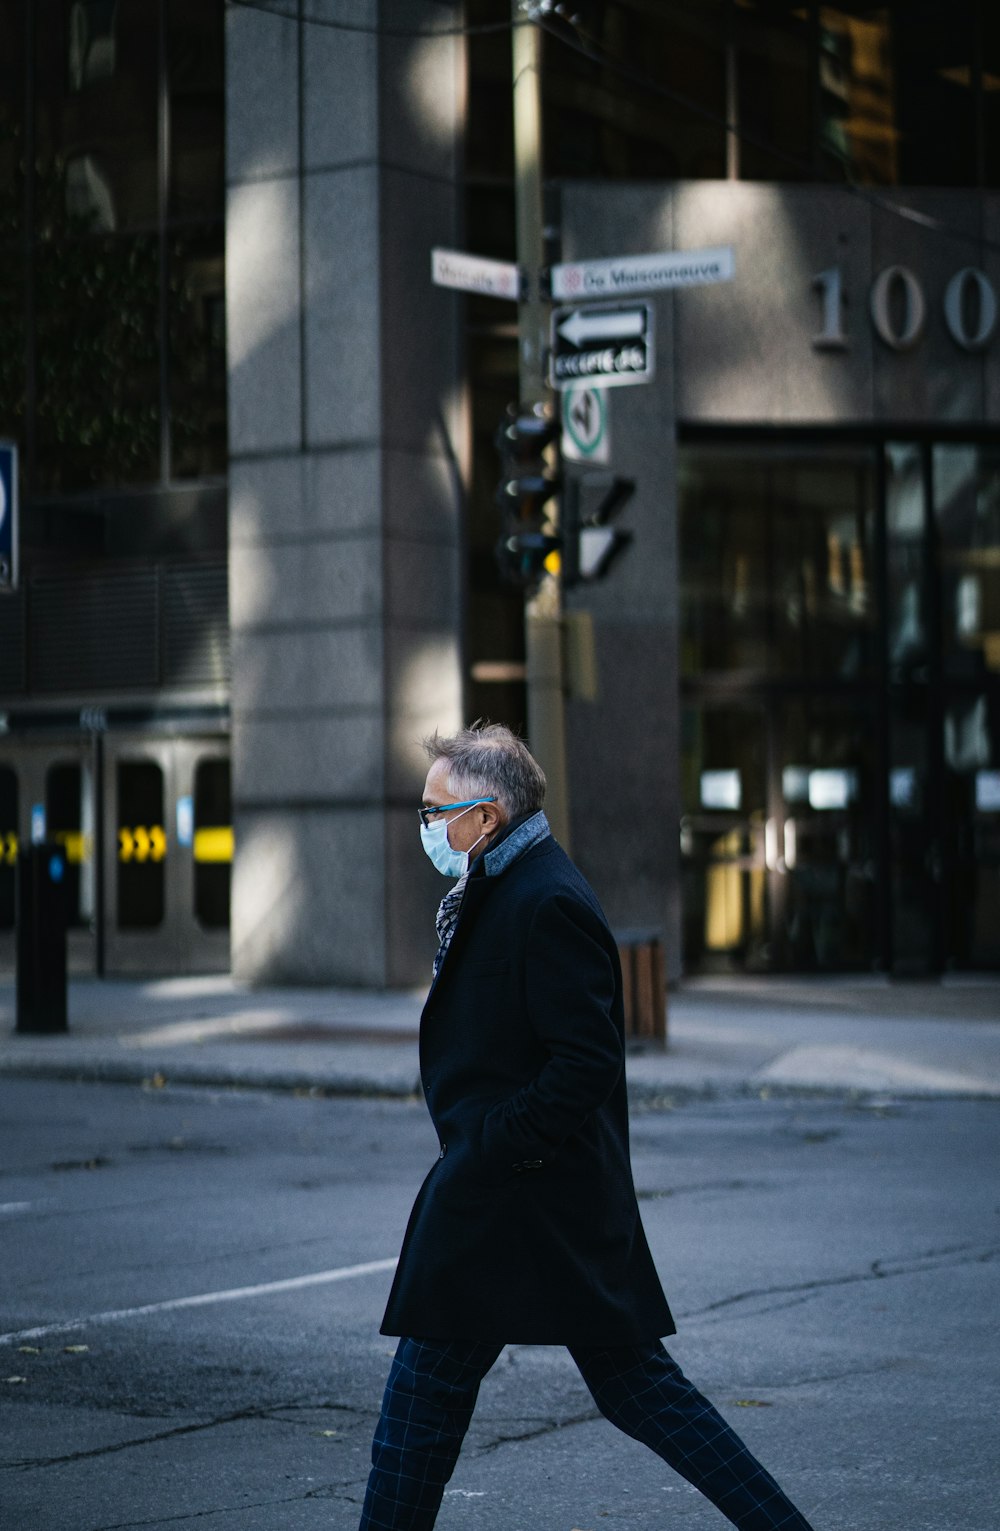 白と青のニット帽をかぶった黒いジャケットを着た男性が昼間、建物の近くに立っている